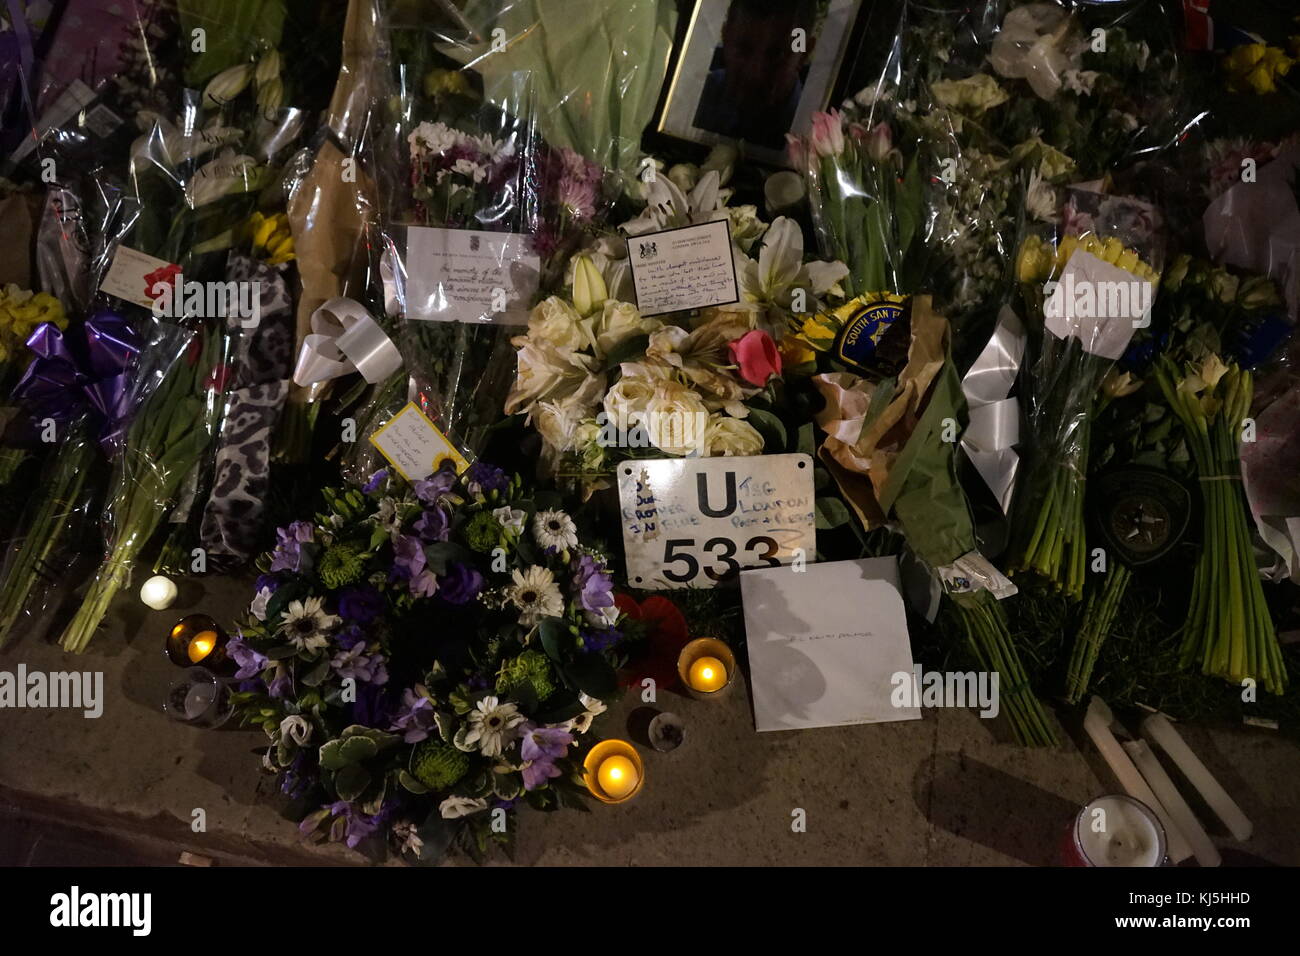 Omaggi a Westminster a Londra dopo il 22 marzo 2017, un attacco terroristico in prossimità del Palazzo di Westminster a Londra, sede del parlamento britannico. Foto Stock